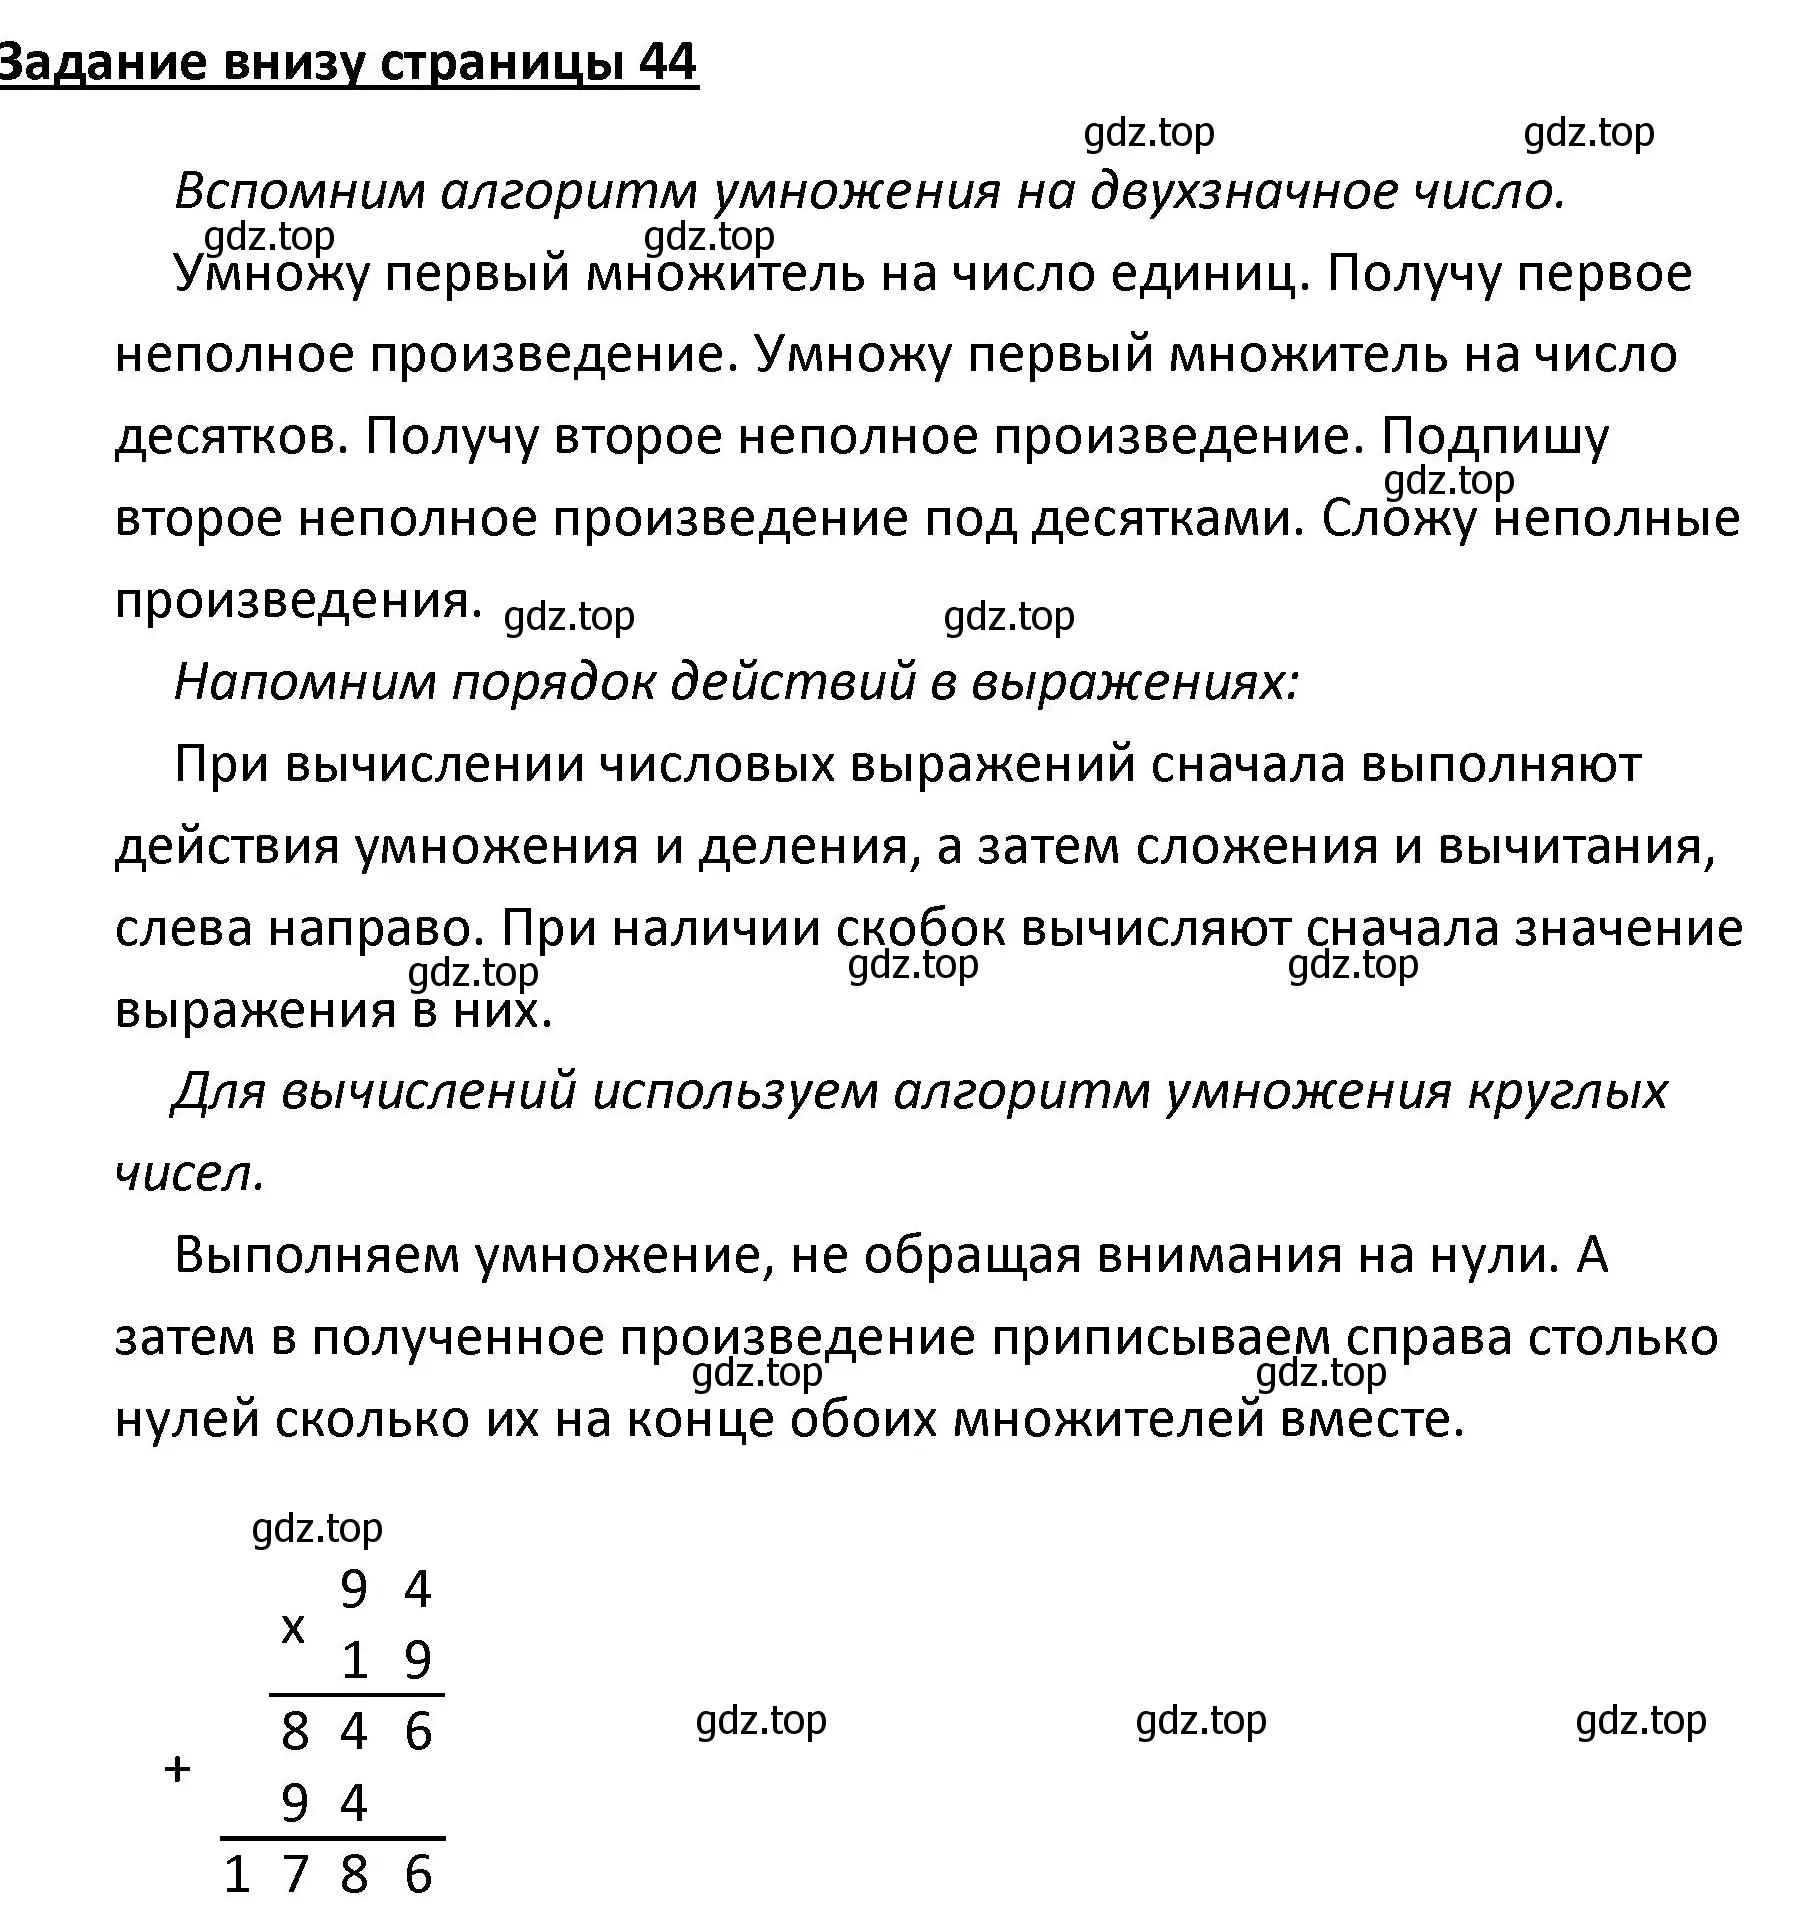 Решение  Задание внизу страницы (страница 44) гдз по математике 4 класс Моро, Бантова, учебник 2 часть